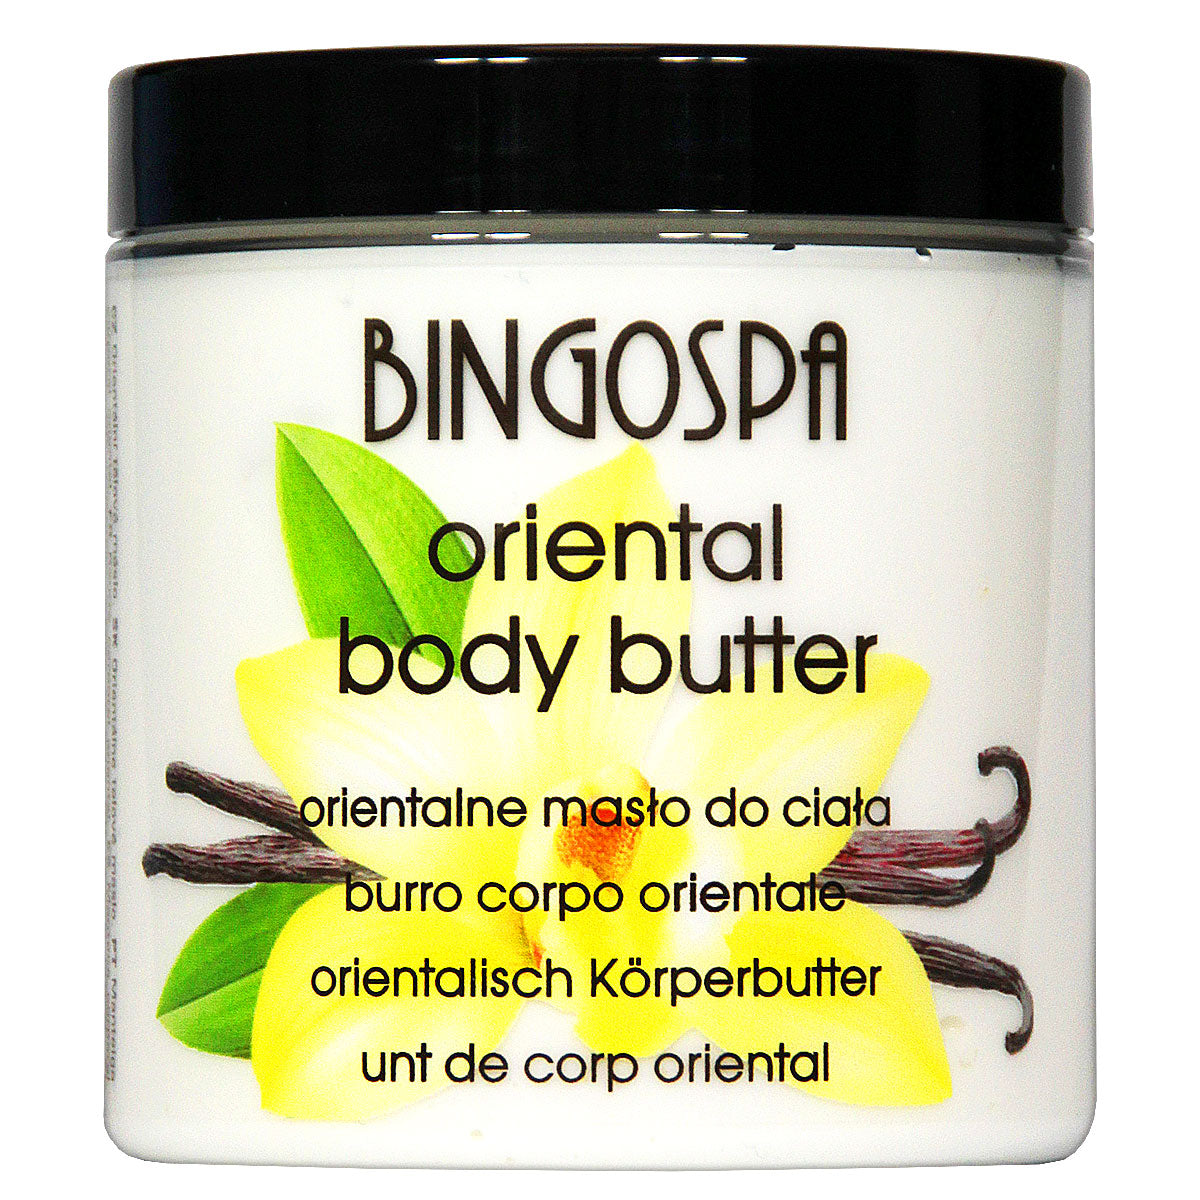 Orientalne masło do ciała BINGOSPA